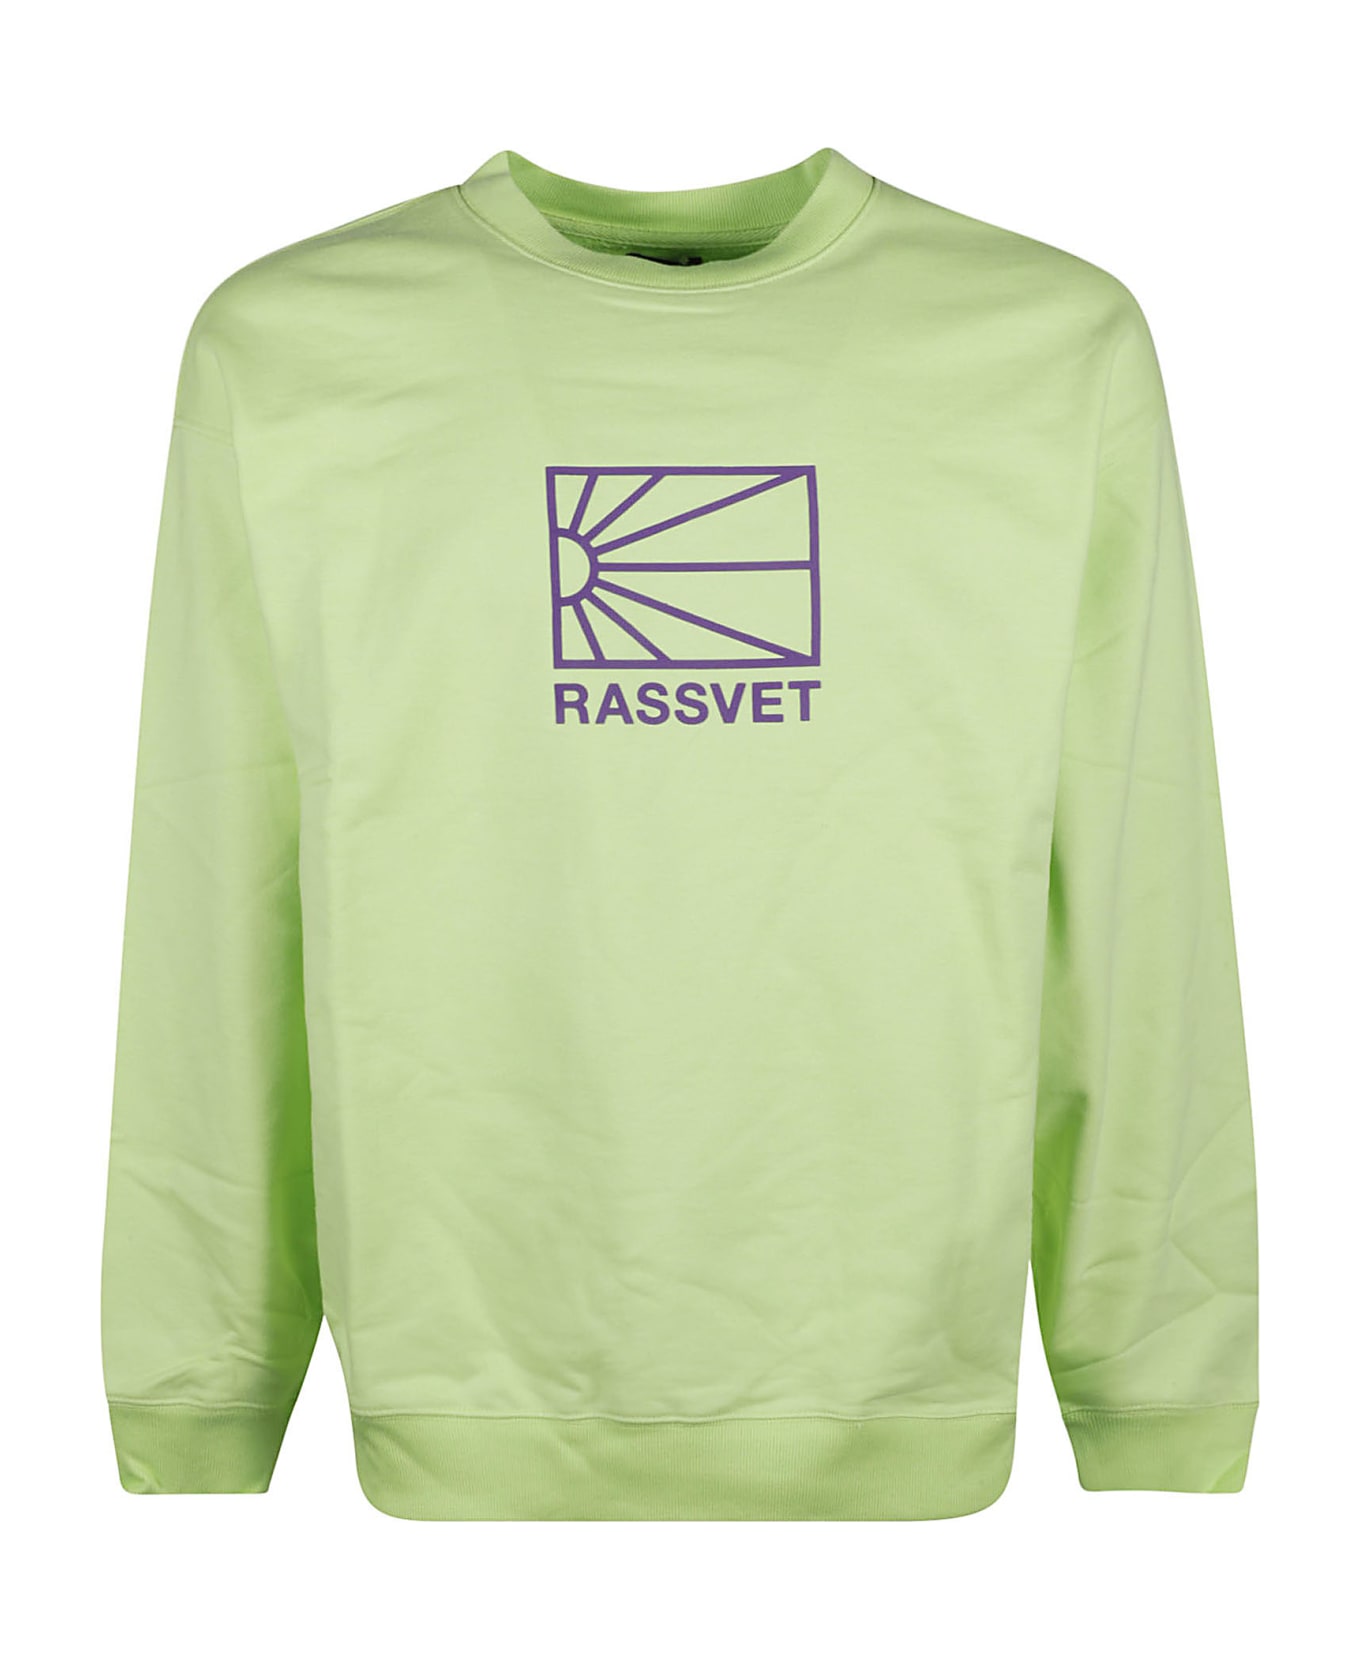 PACCBET Printed Sweatshirt - Green フリース